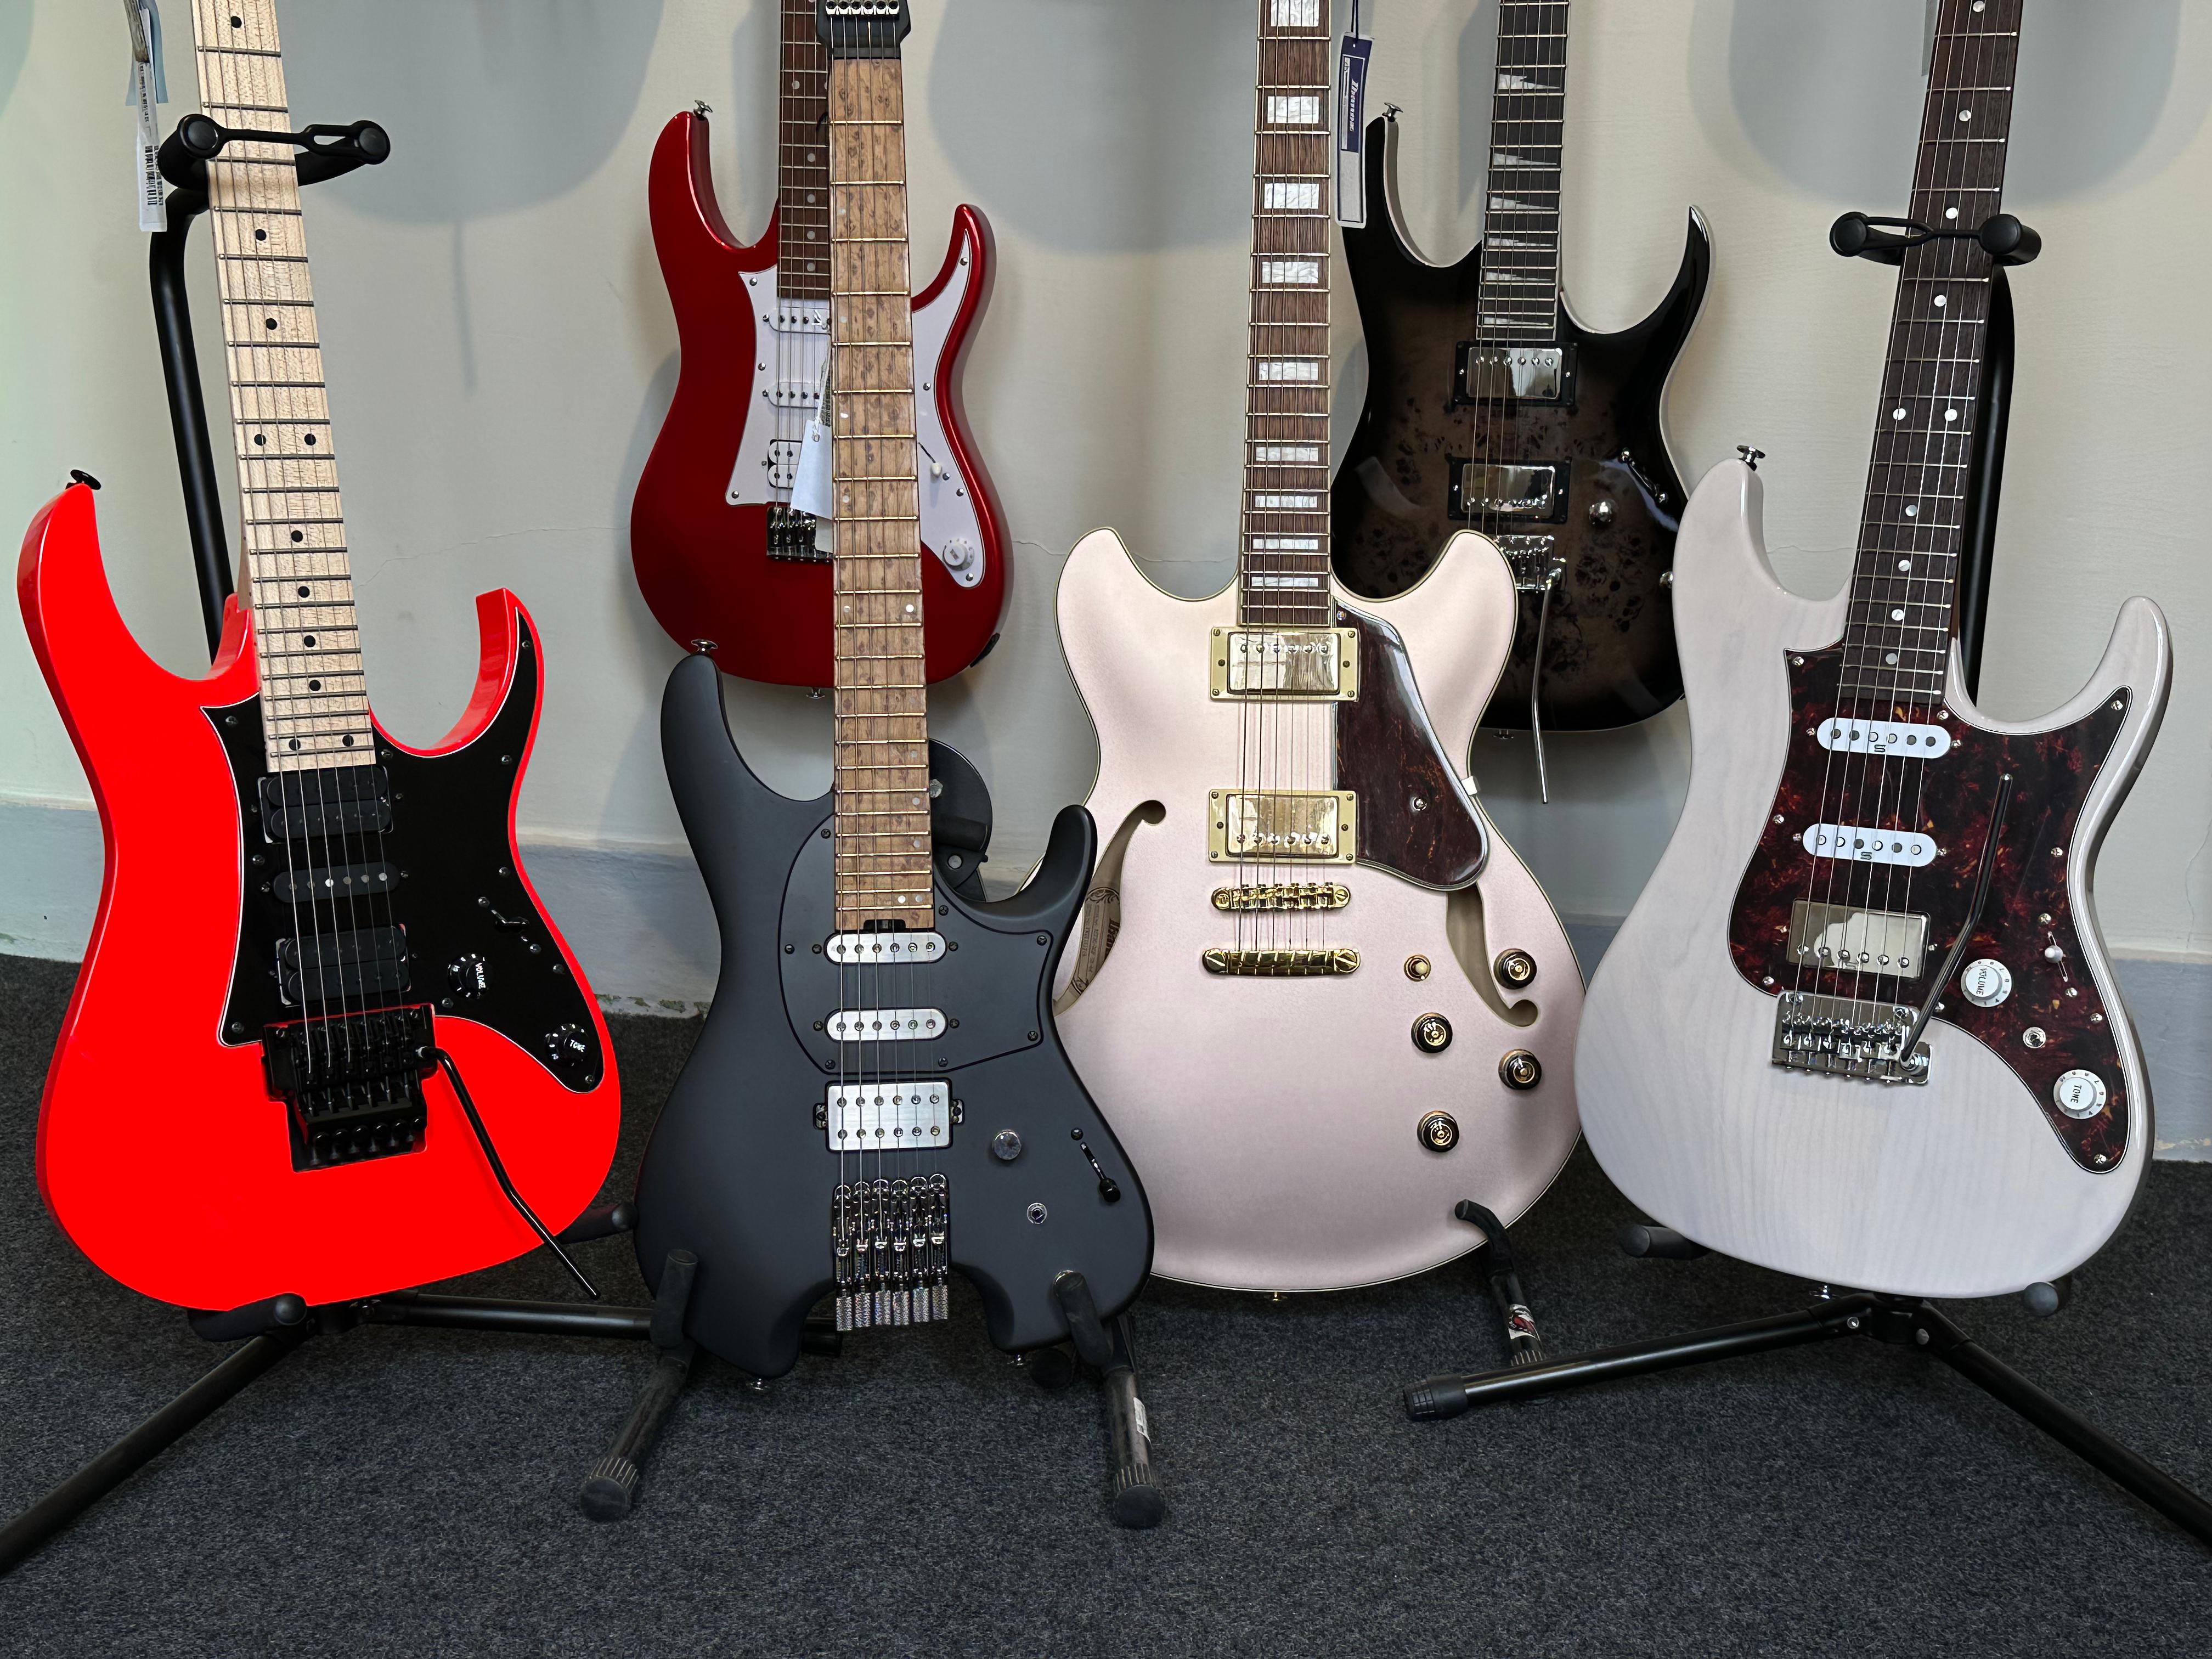 Guitarras Ibanez: confira o guia definitivo para escolher o modelo certo para você